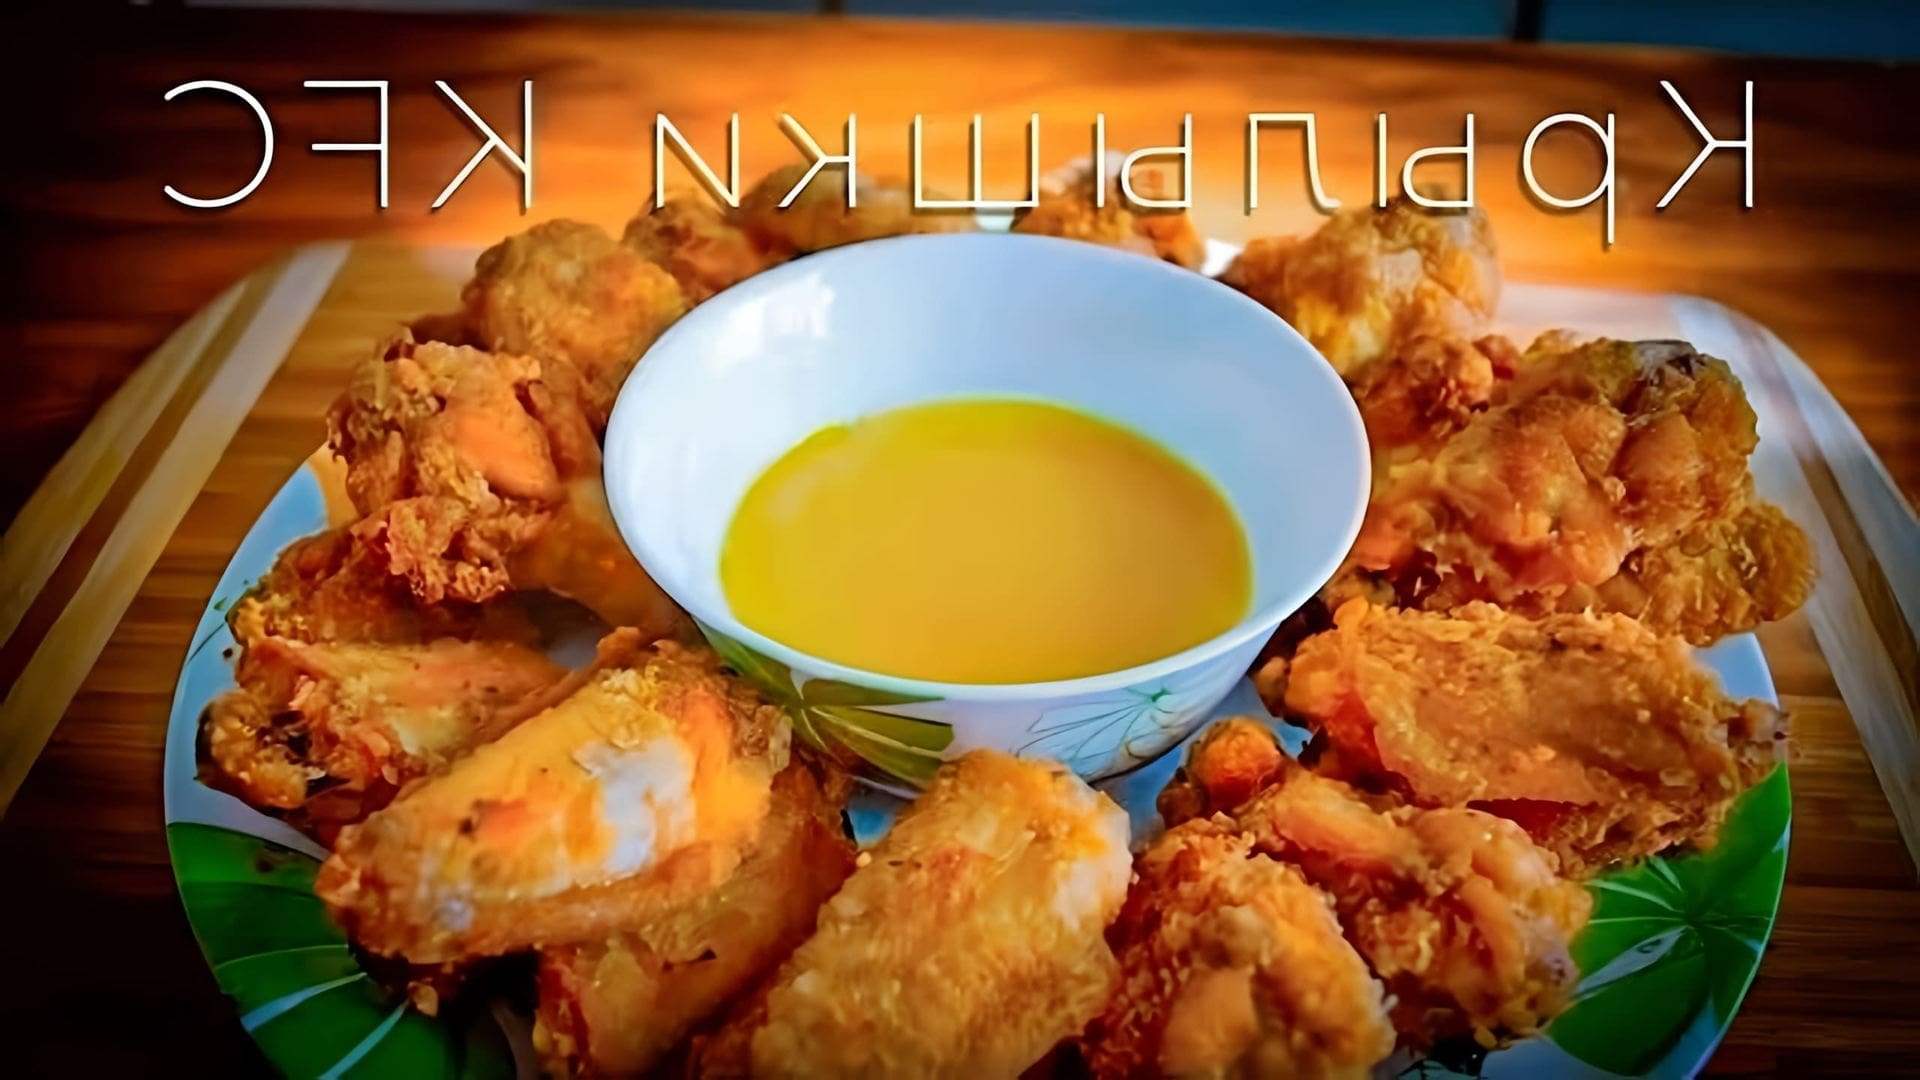 В этом видео-ролике будет представлен оригинальный рецепт приготовления крылышек KFC, который можно использовать для создания домашней версии популярного блюда